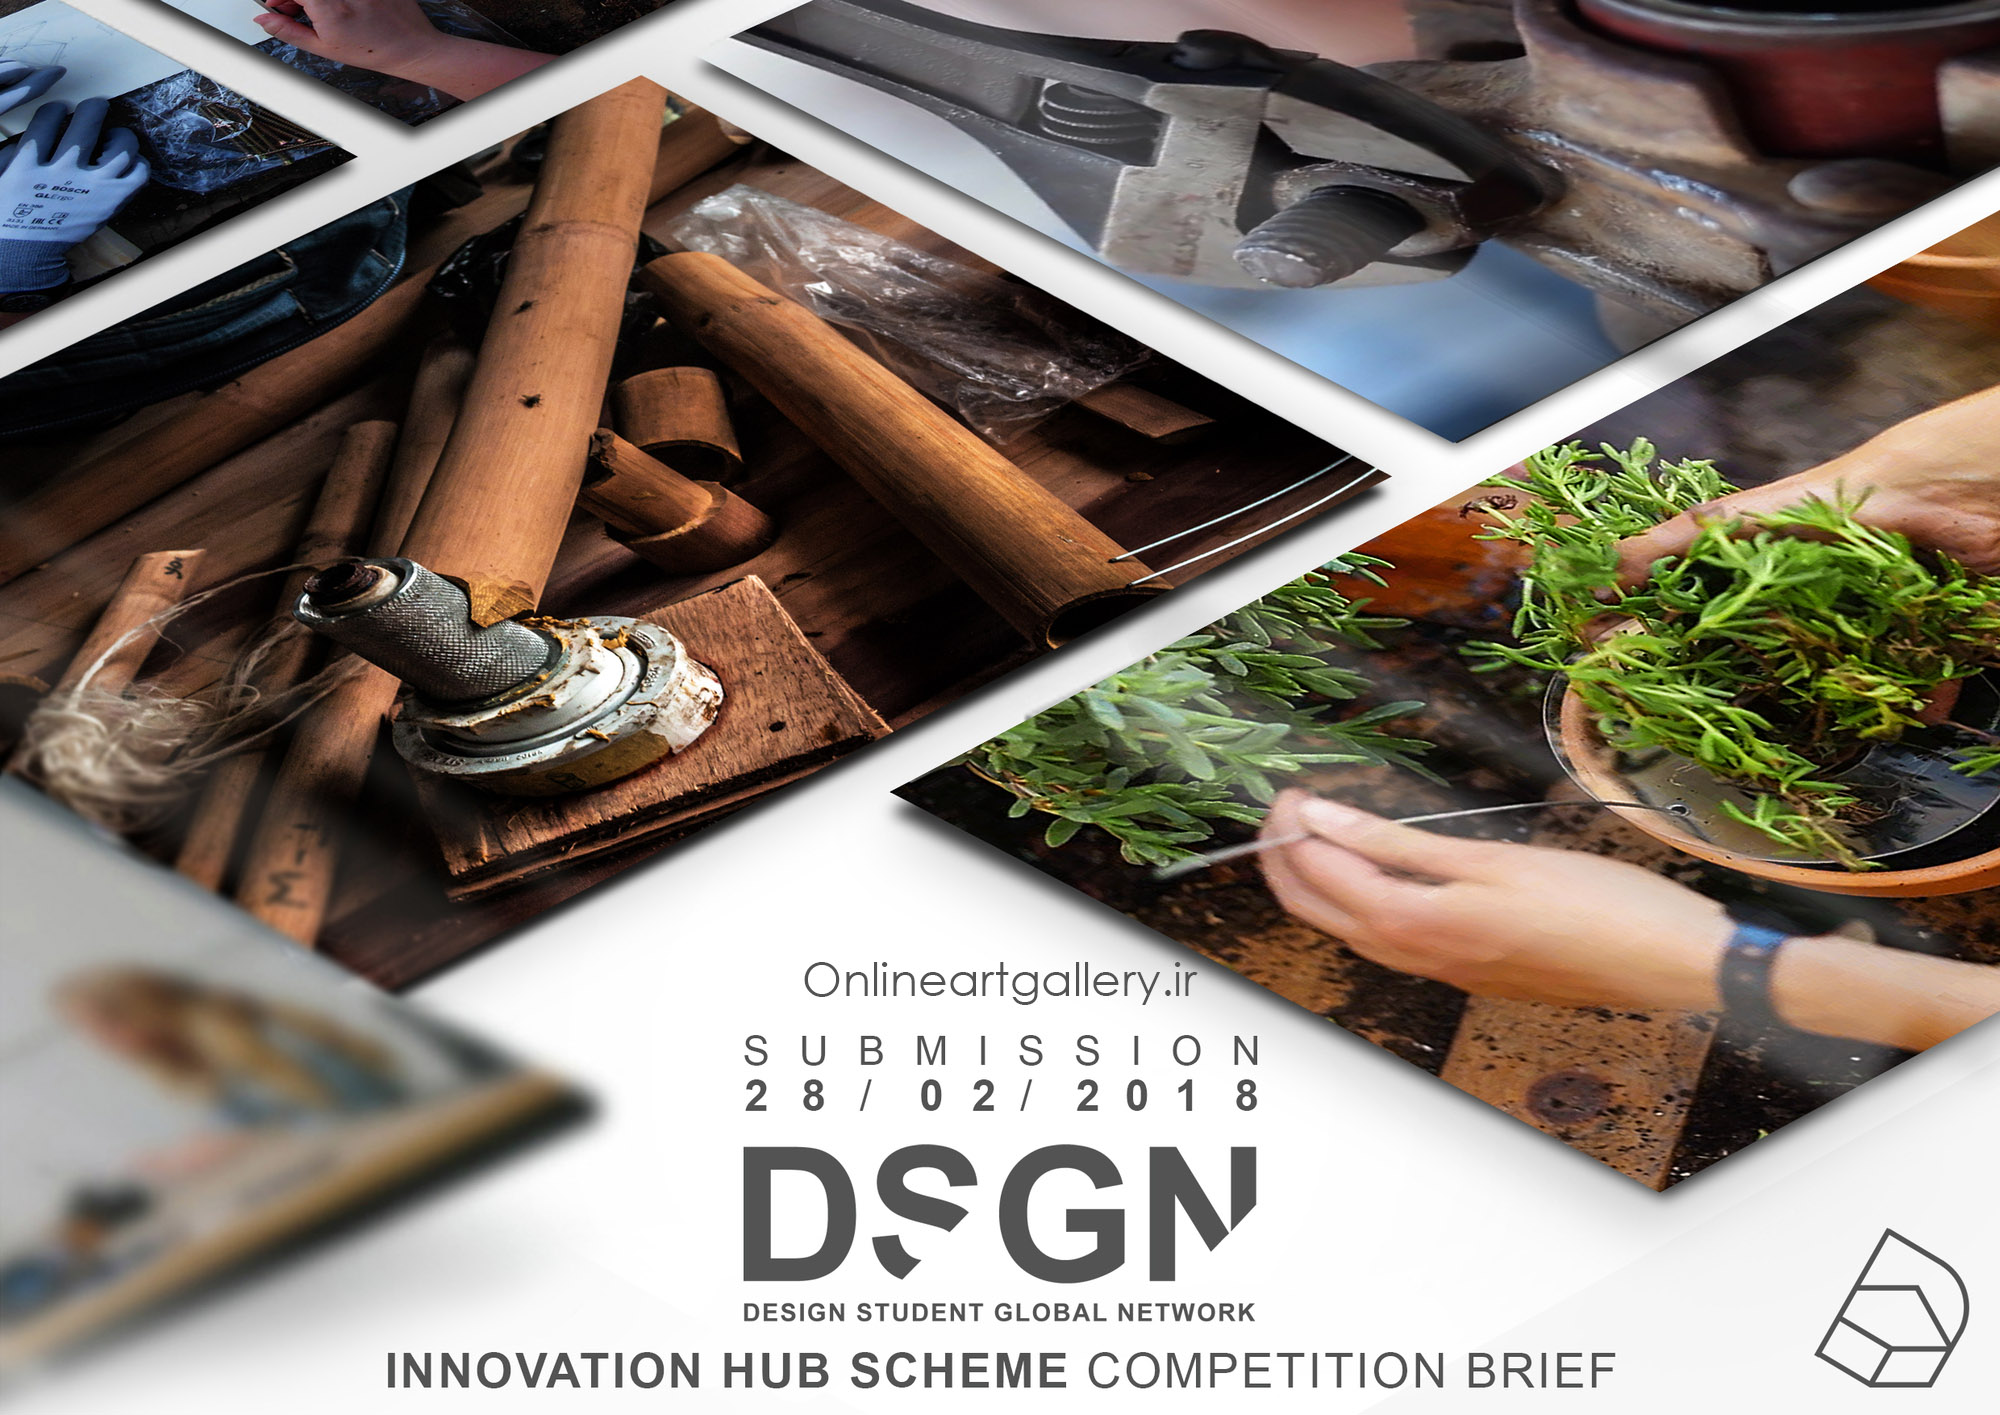 فراخوان مسابقه معماری طراحی مرکز نوآوری DSGN در بالی، اندونزی